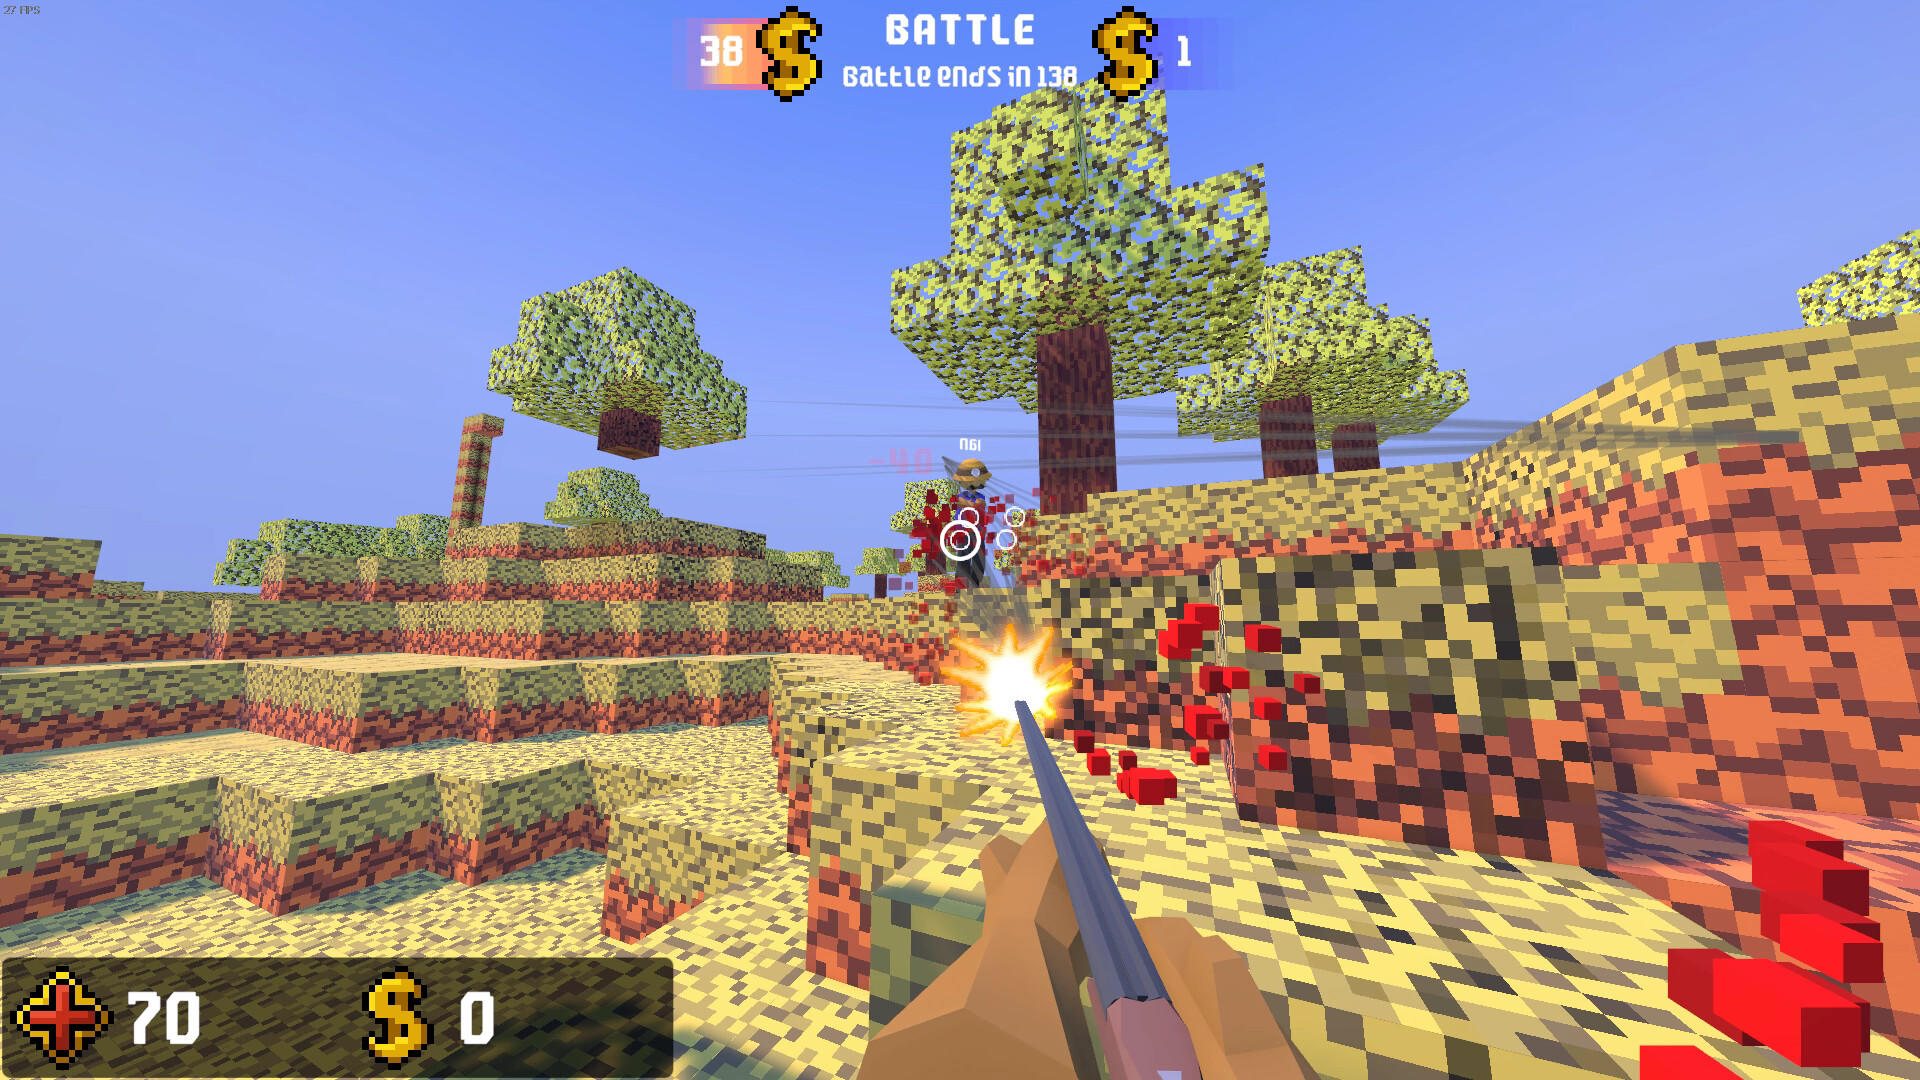 Screenshot 1 of Игра «Построить бой» 